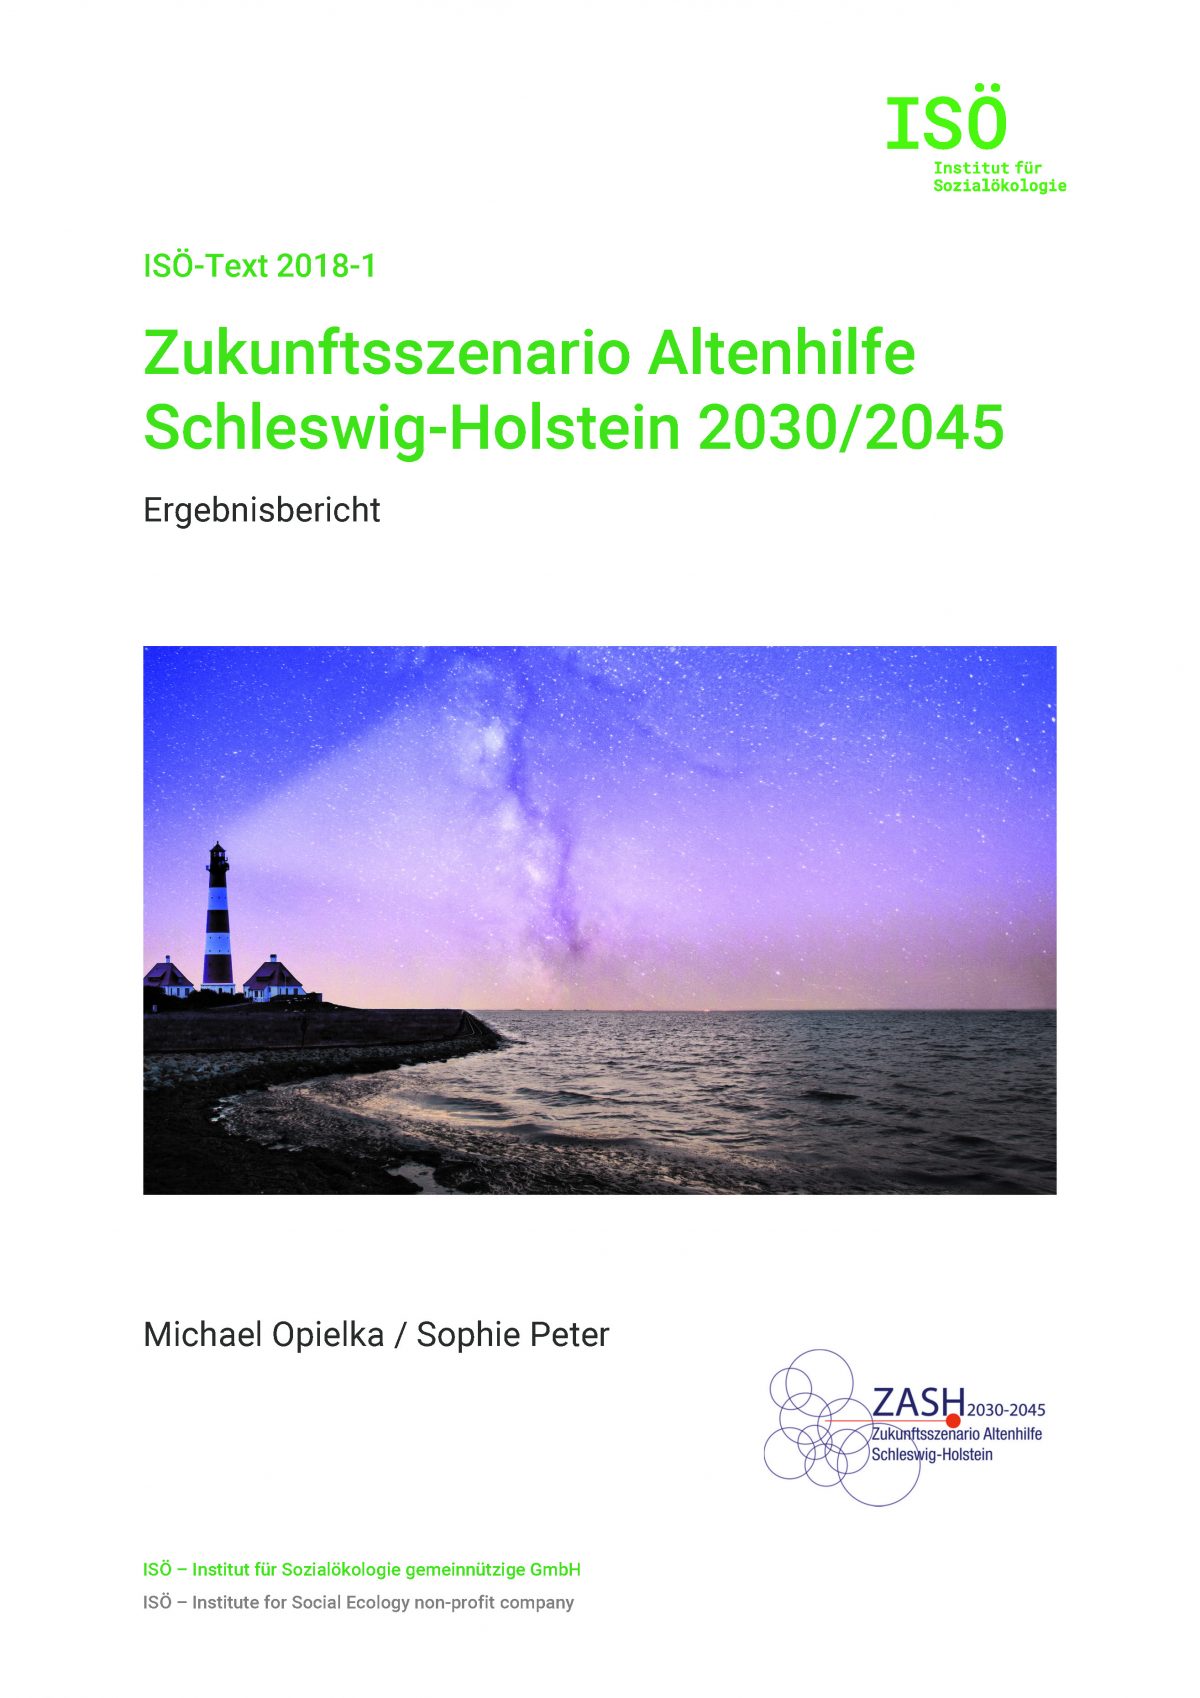 Michael Opielka/Sophie Peter, Zukunftsszenario Altenhilfe Schleswig-Holstein 2030/2045. Ergebnisbericht (ISÖ-Text 2018-1) 